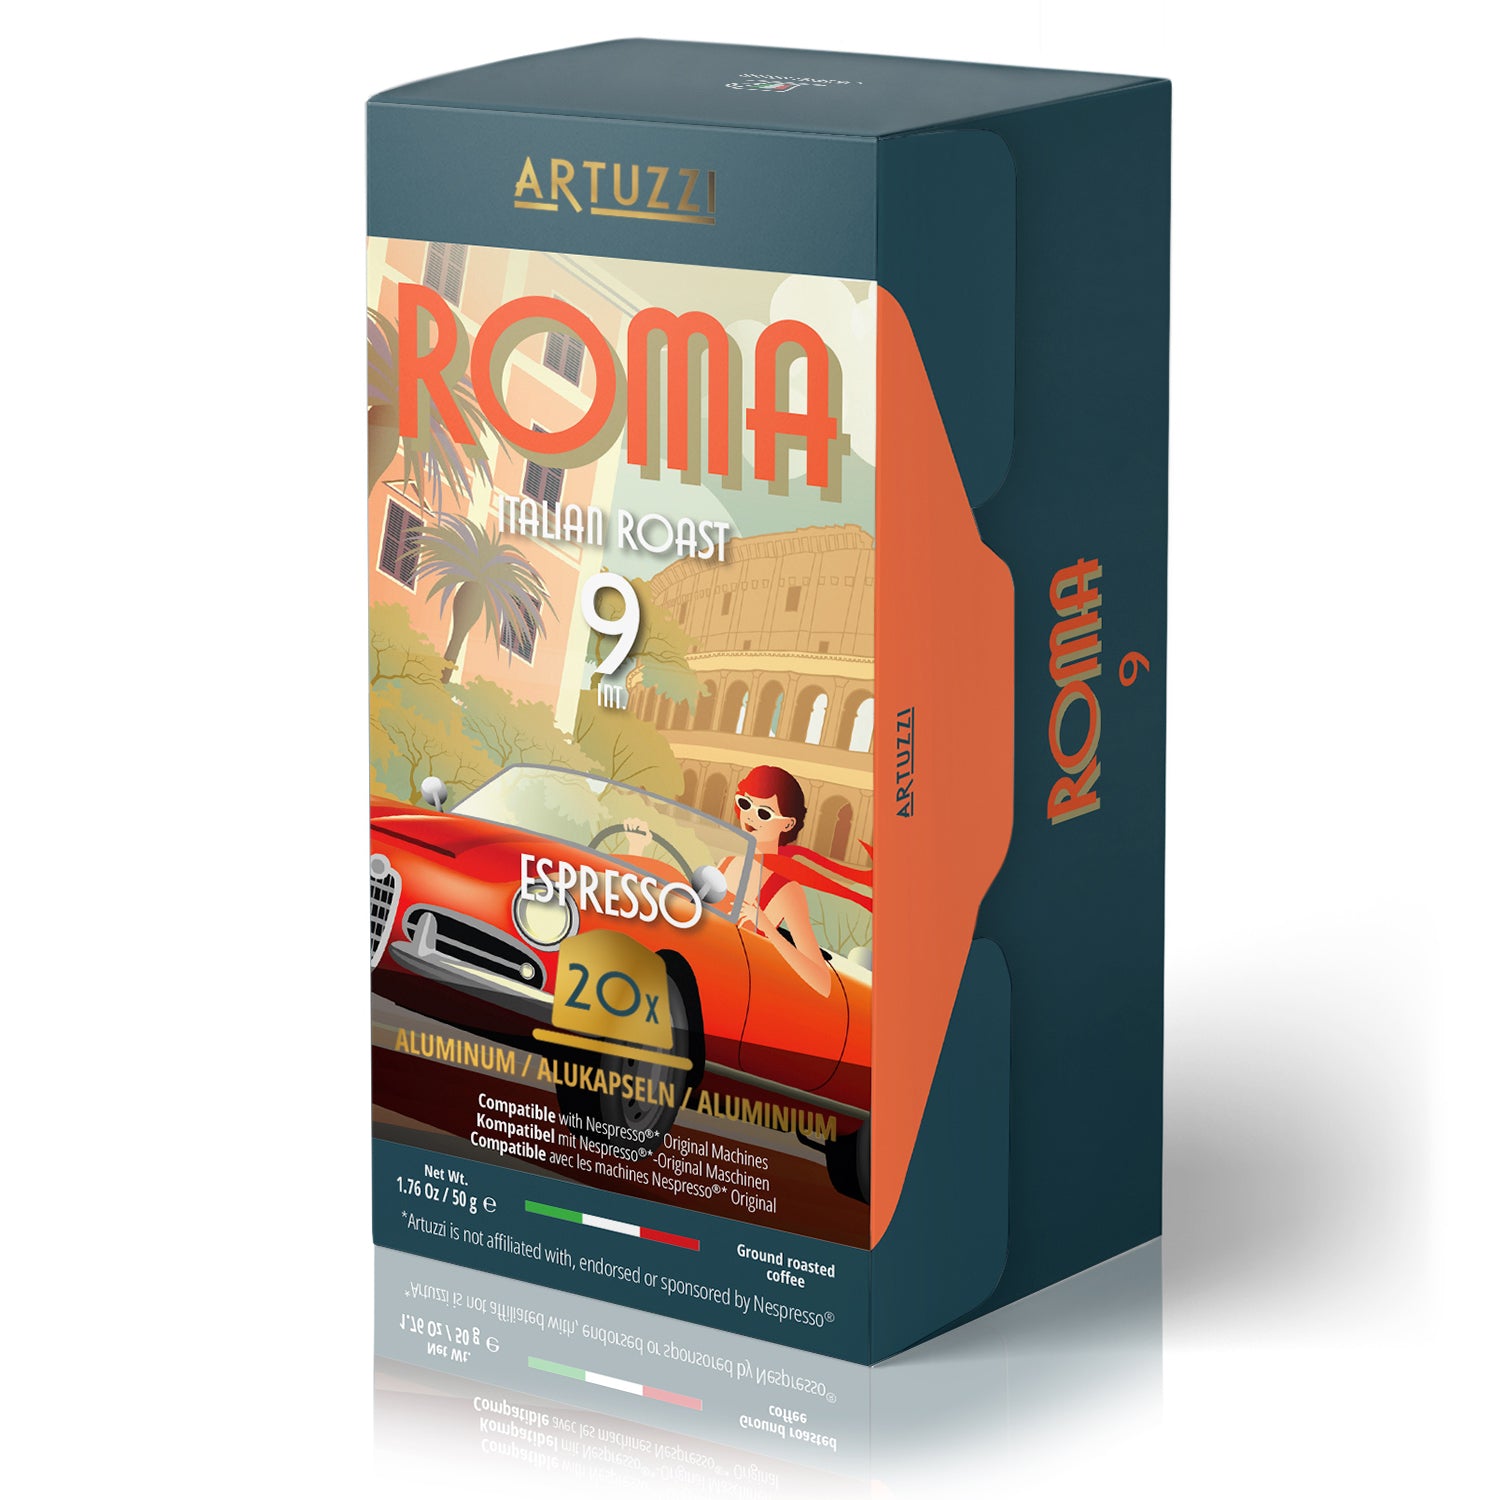 Image of Artuzzi Roma - Espresso - 20 Aluminum Pods